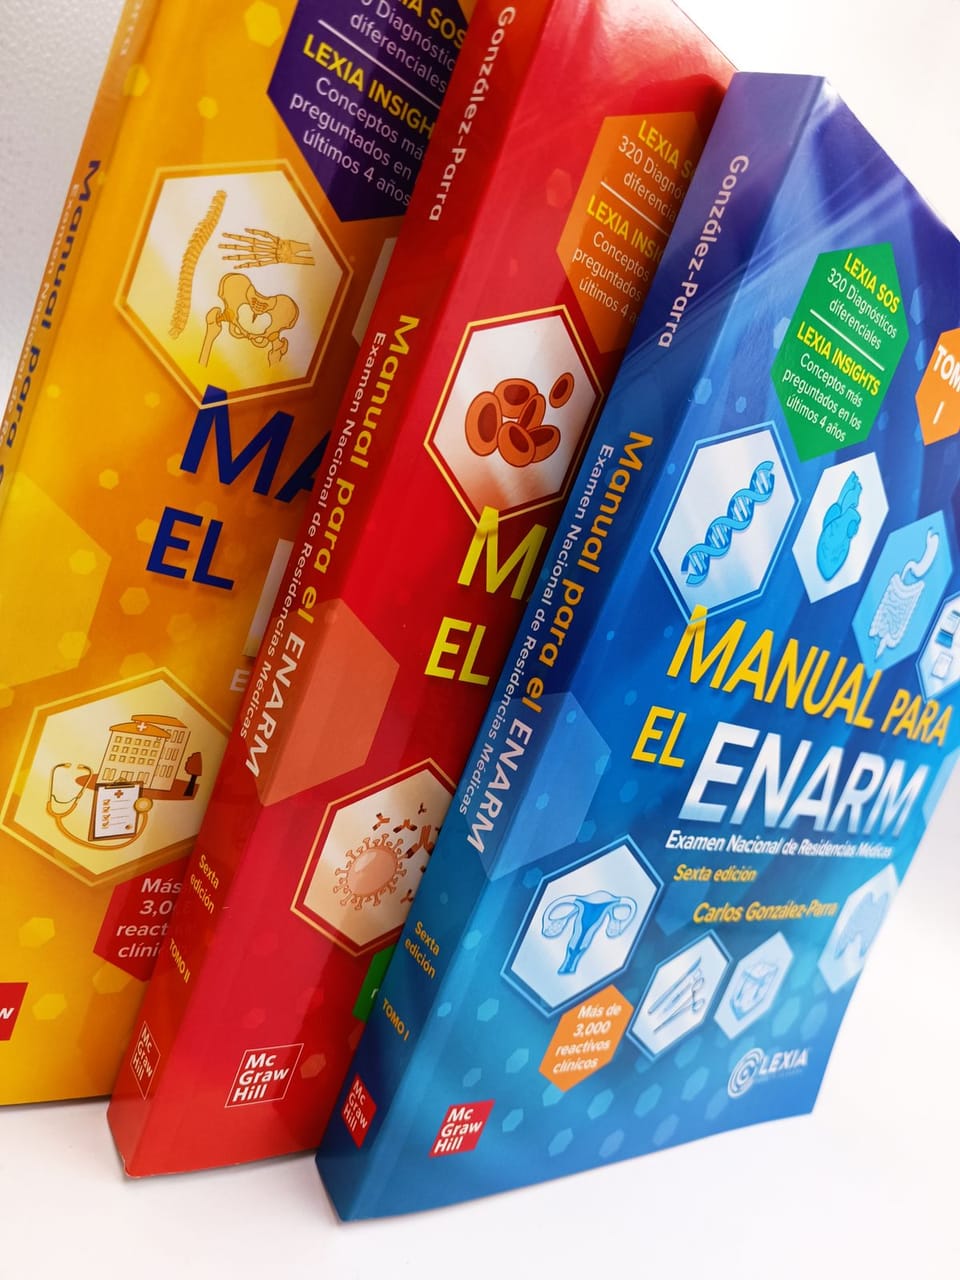 Dominando el ENARM: Una revisión integral de "Manual para el ENARM 3 tomos" de Carlos González Parra